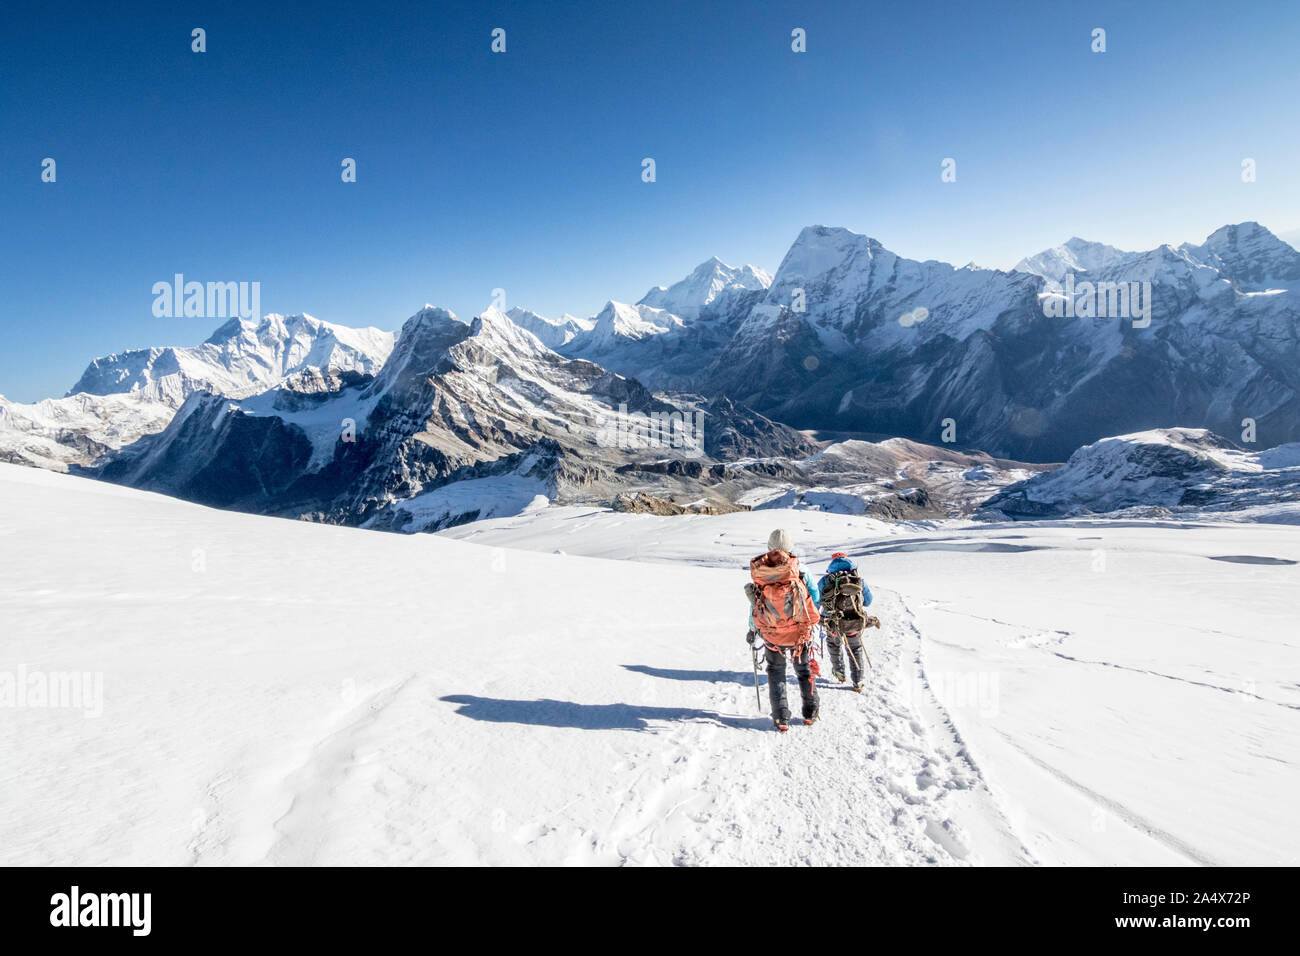 Mera Peak Trek and Climb Nepal Stock Photo